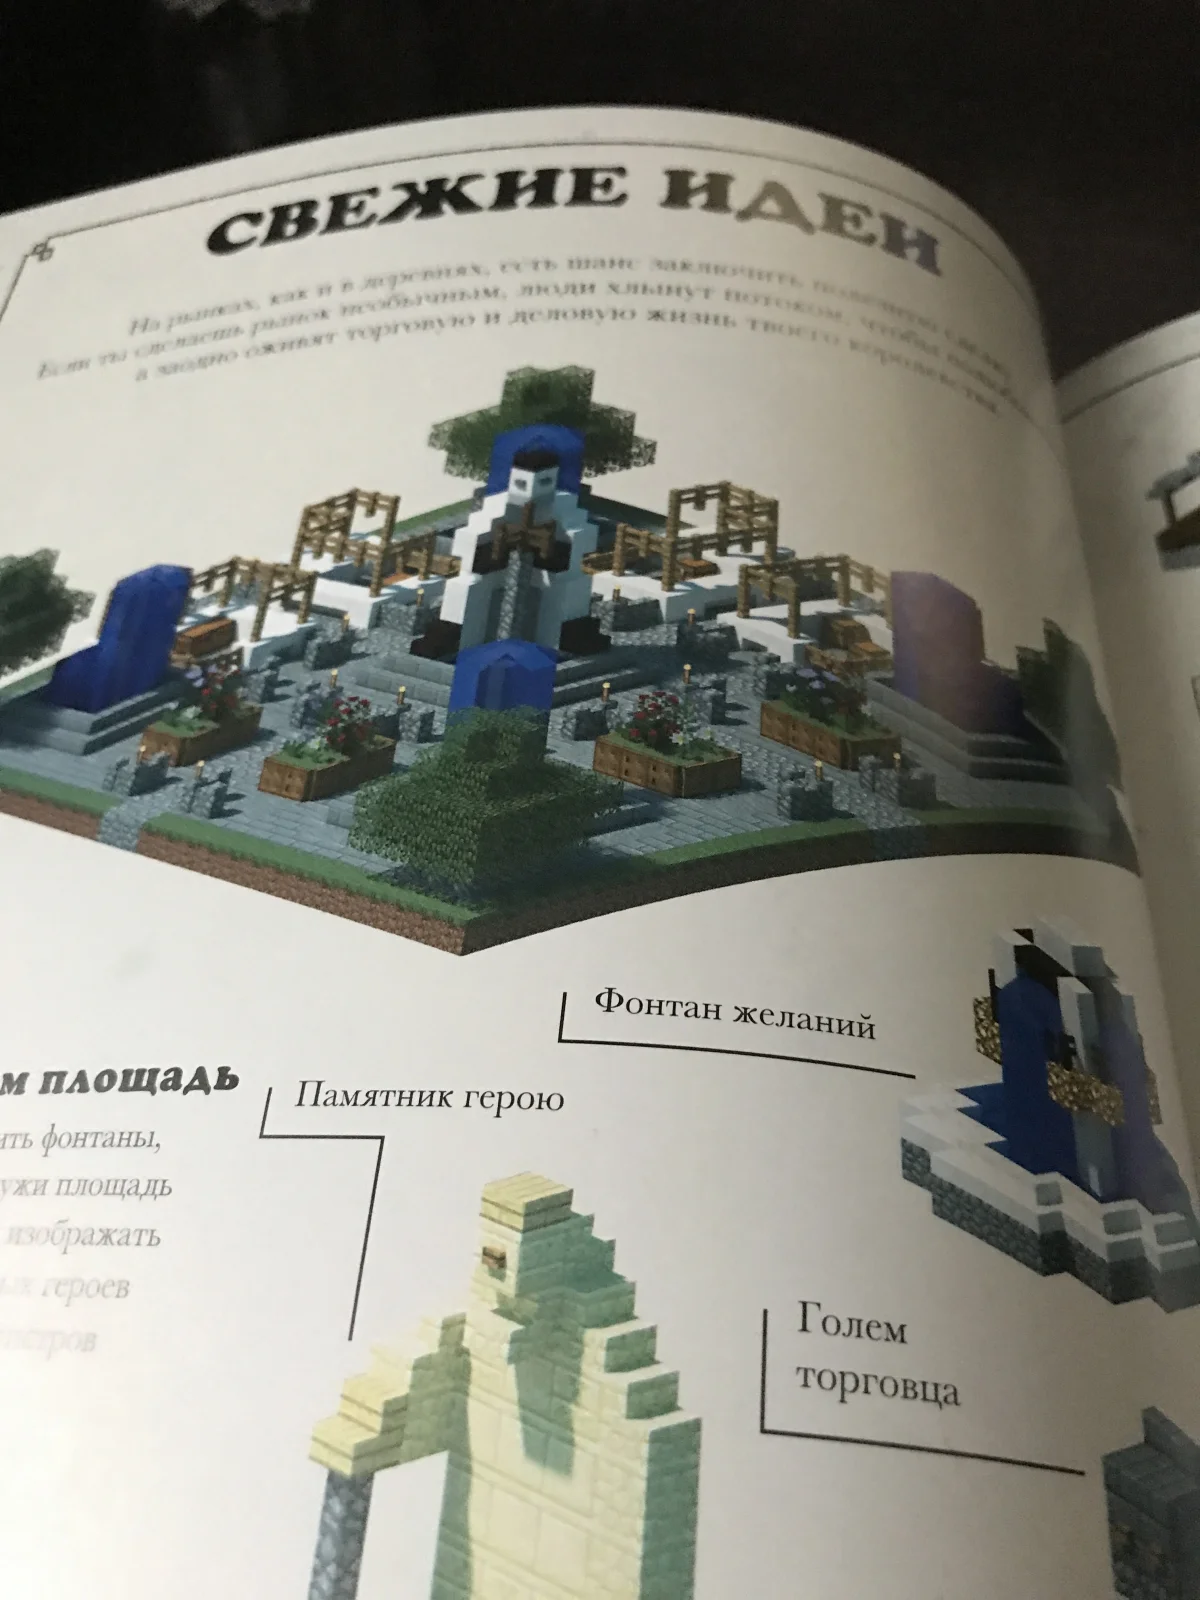 Обзор двух книг по Minecraft — «Minecraft: Только факты» и «Minecraft: Средневековая крепость» - фото 9